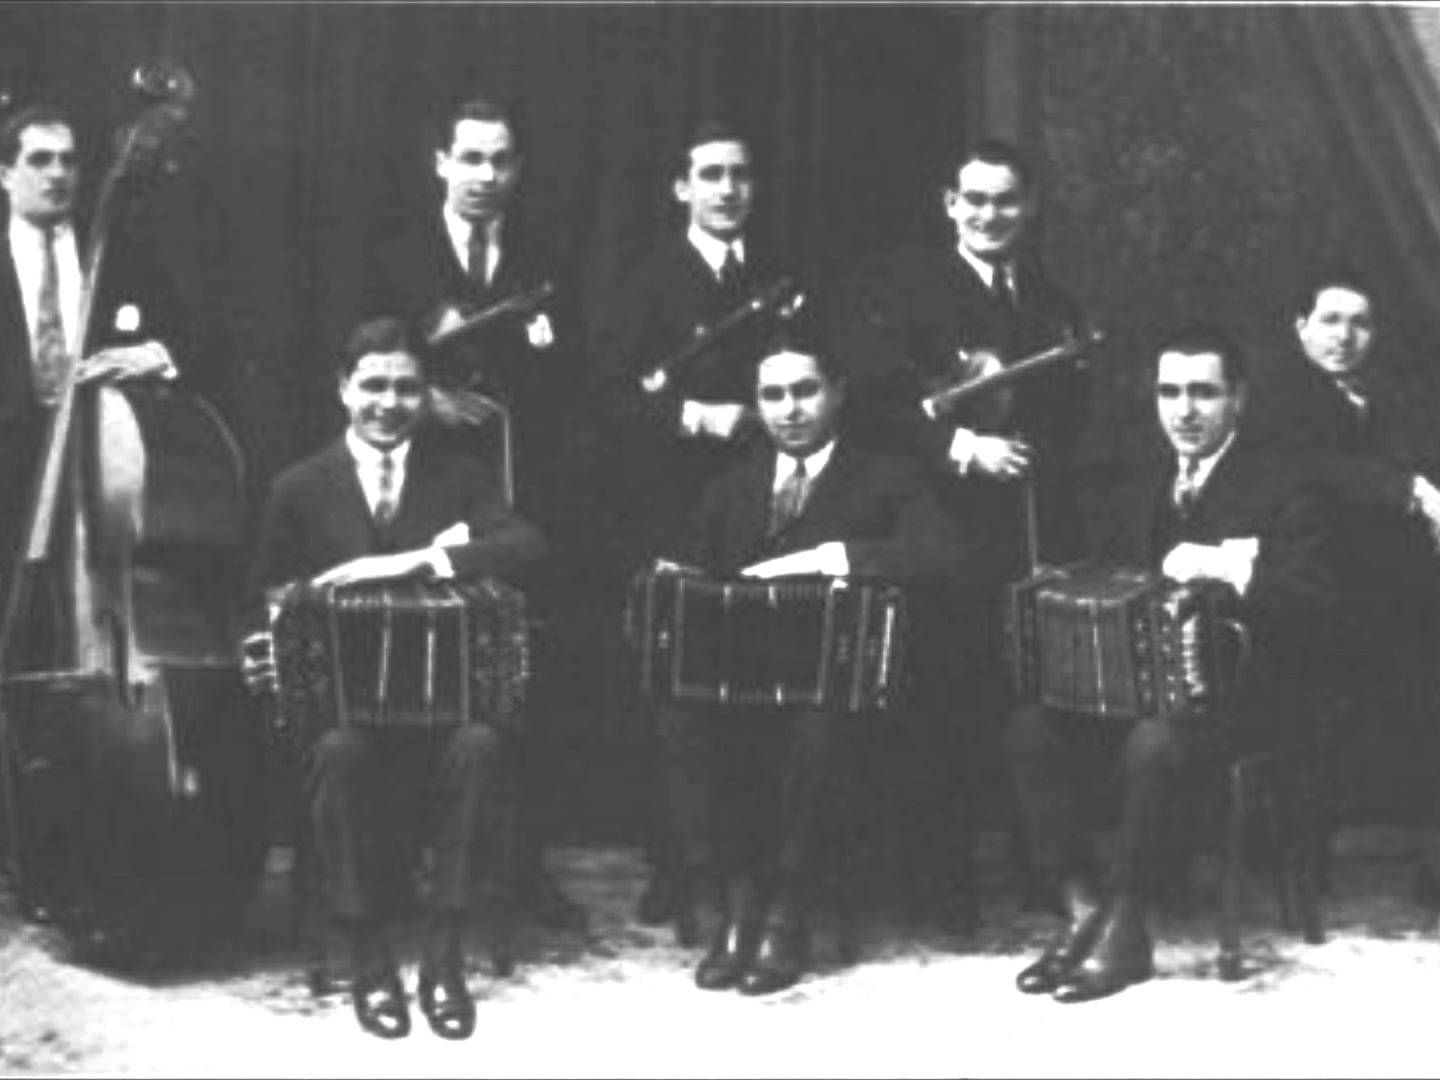 Orquesta Típica Victor. Argentine music at Escuela de Tango de Buenos Aires.